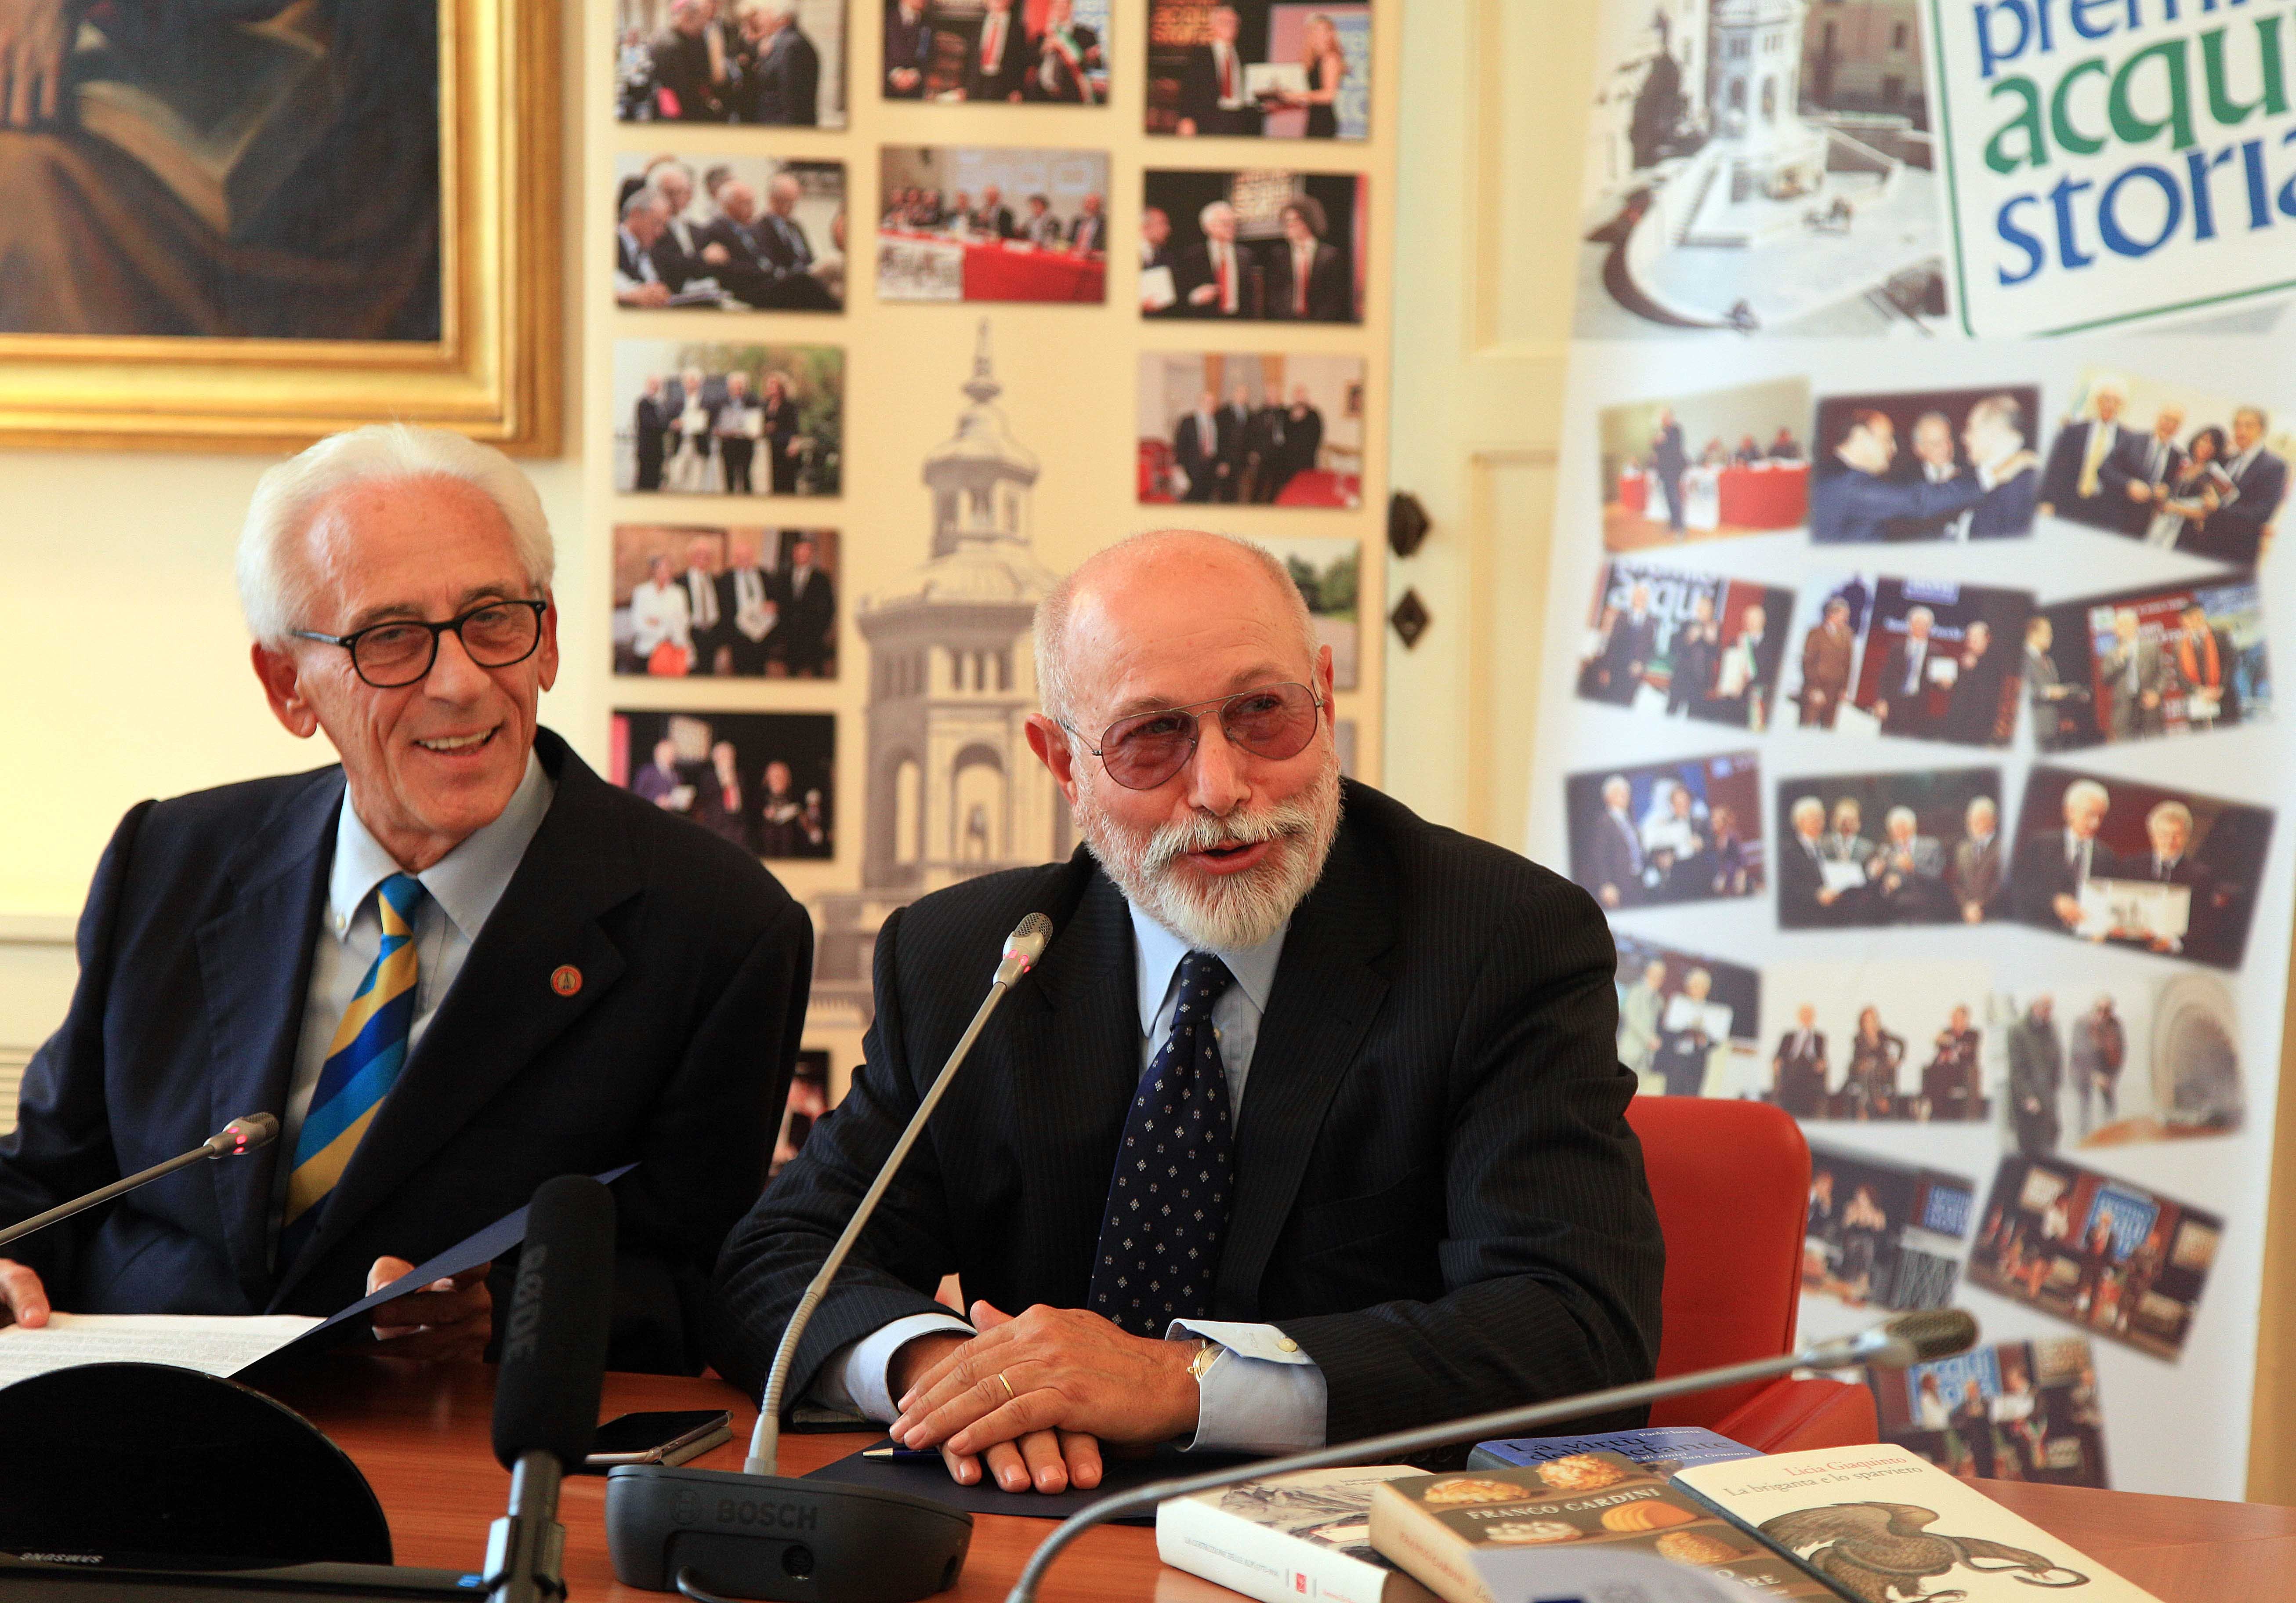 Ballantini, Cucci e Marzullo tra i vincitori del 48° premio Acqui Storia